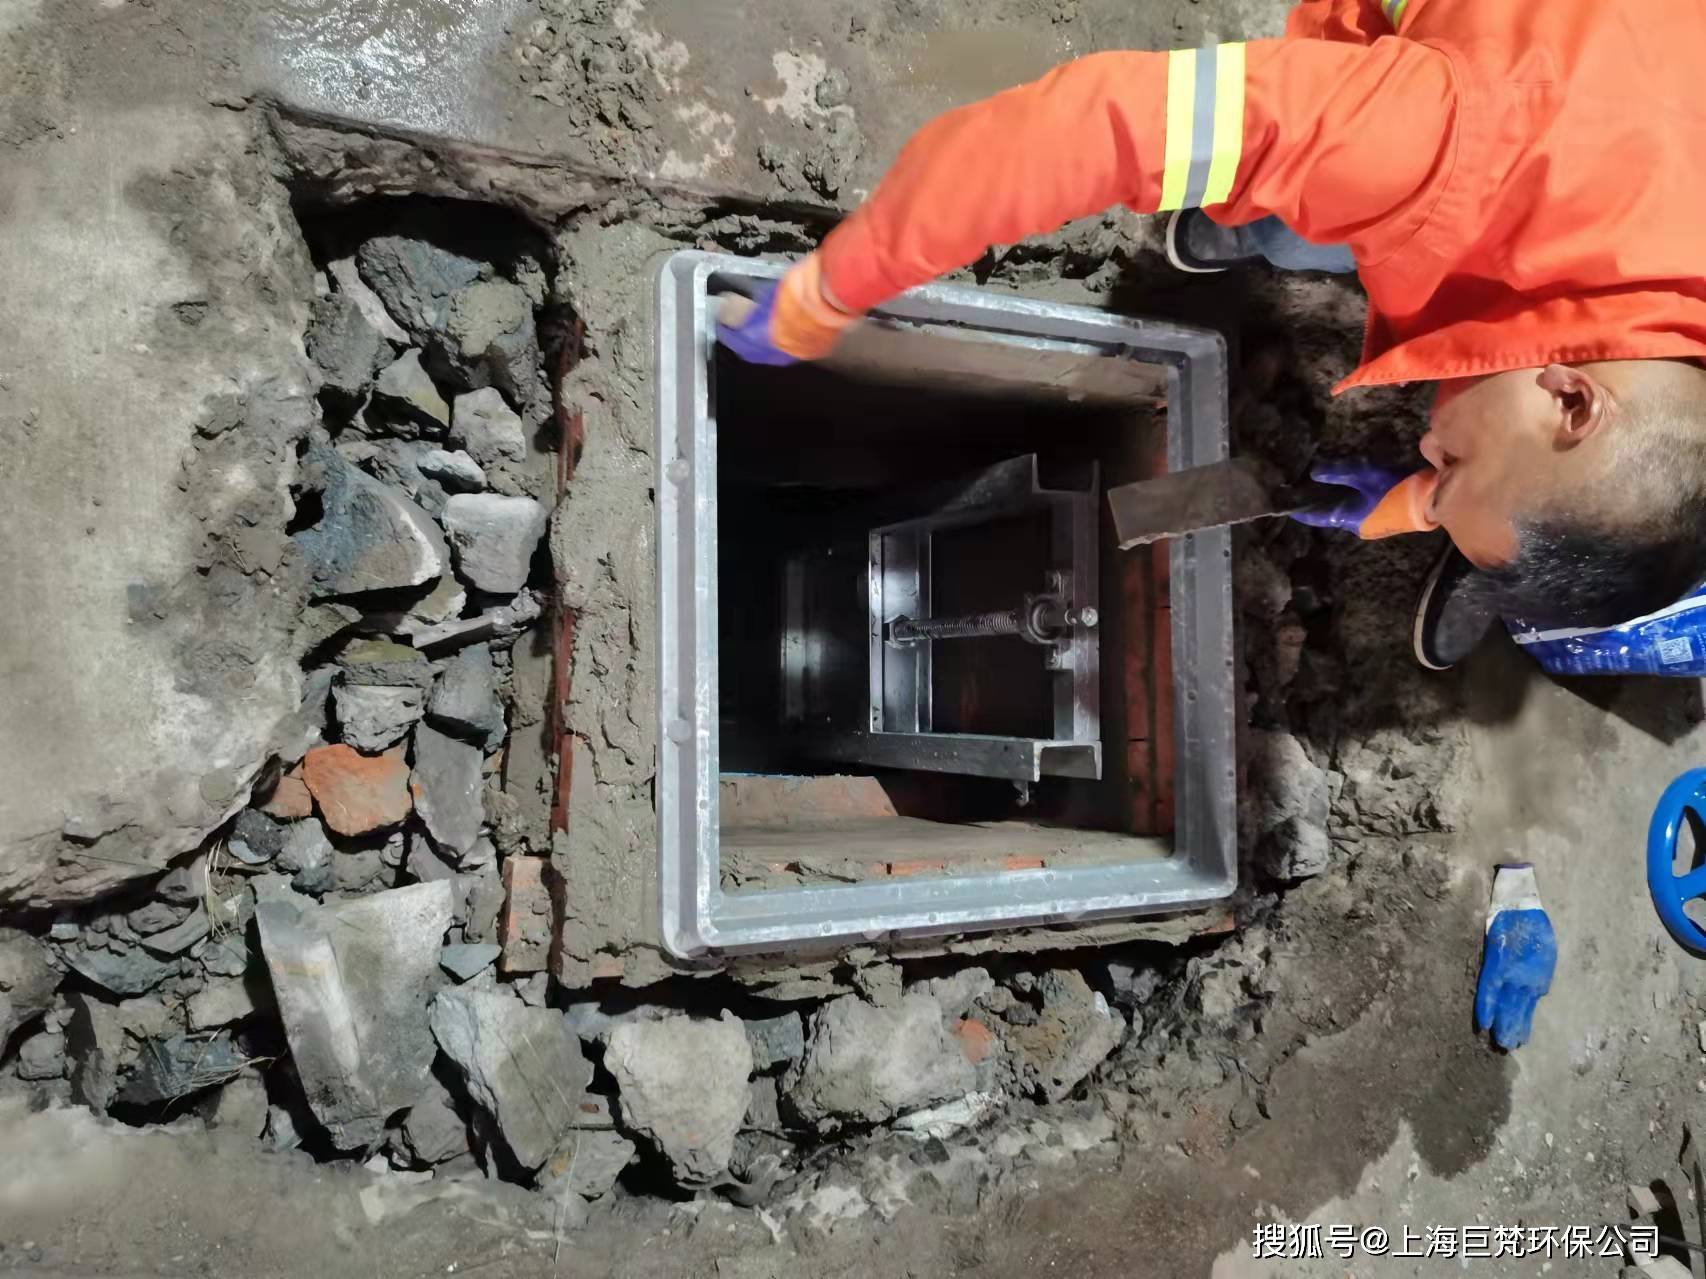 上海管道阀门安装 上海检测井截止阀更换 上海安装污水阀门维修